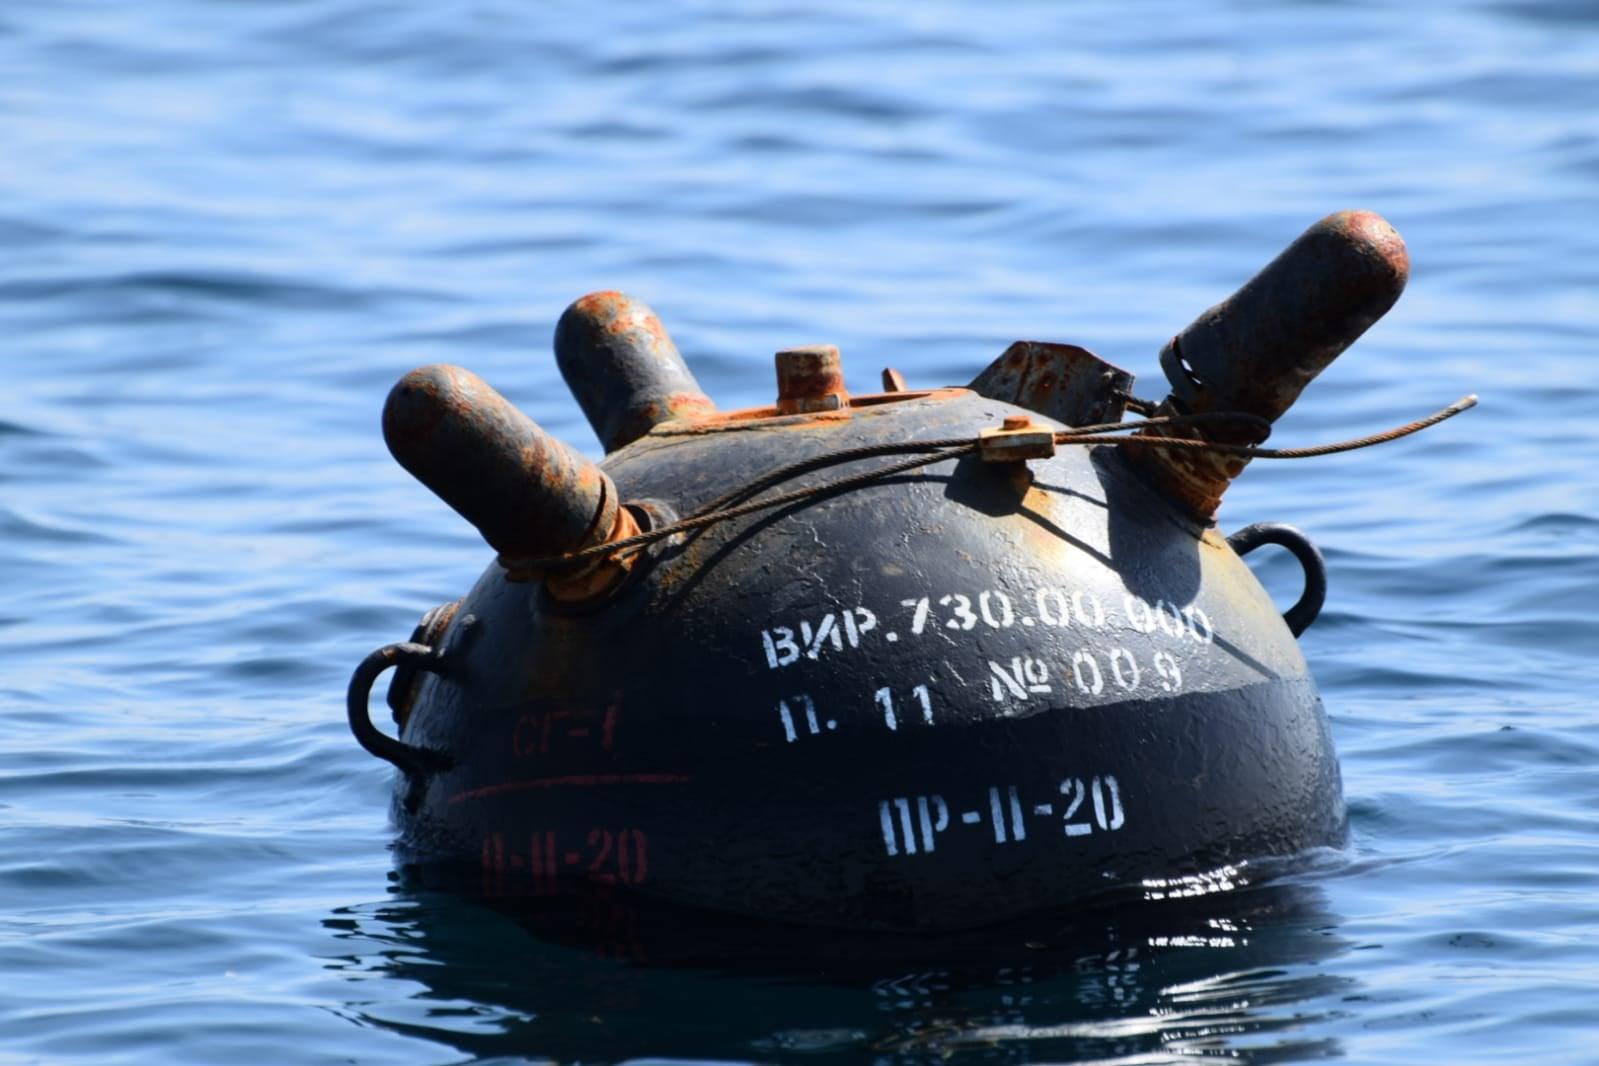 Imagini de la acţiunea de neutralizare a unei mine în Marea Neagră